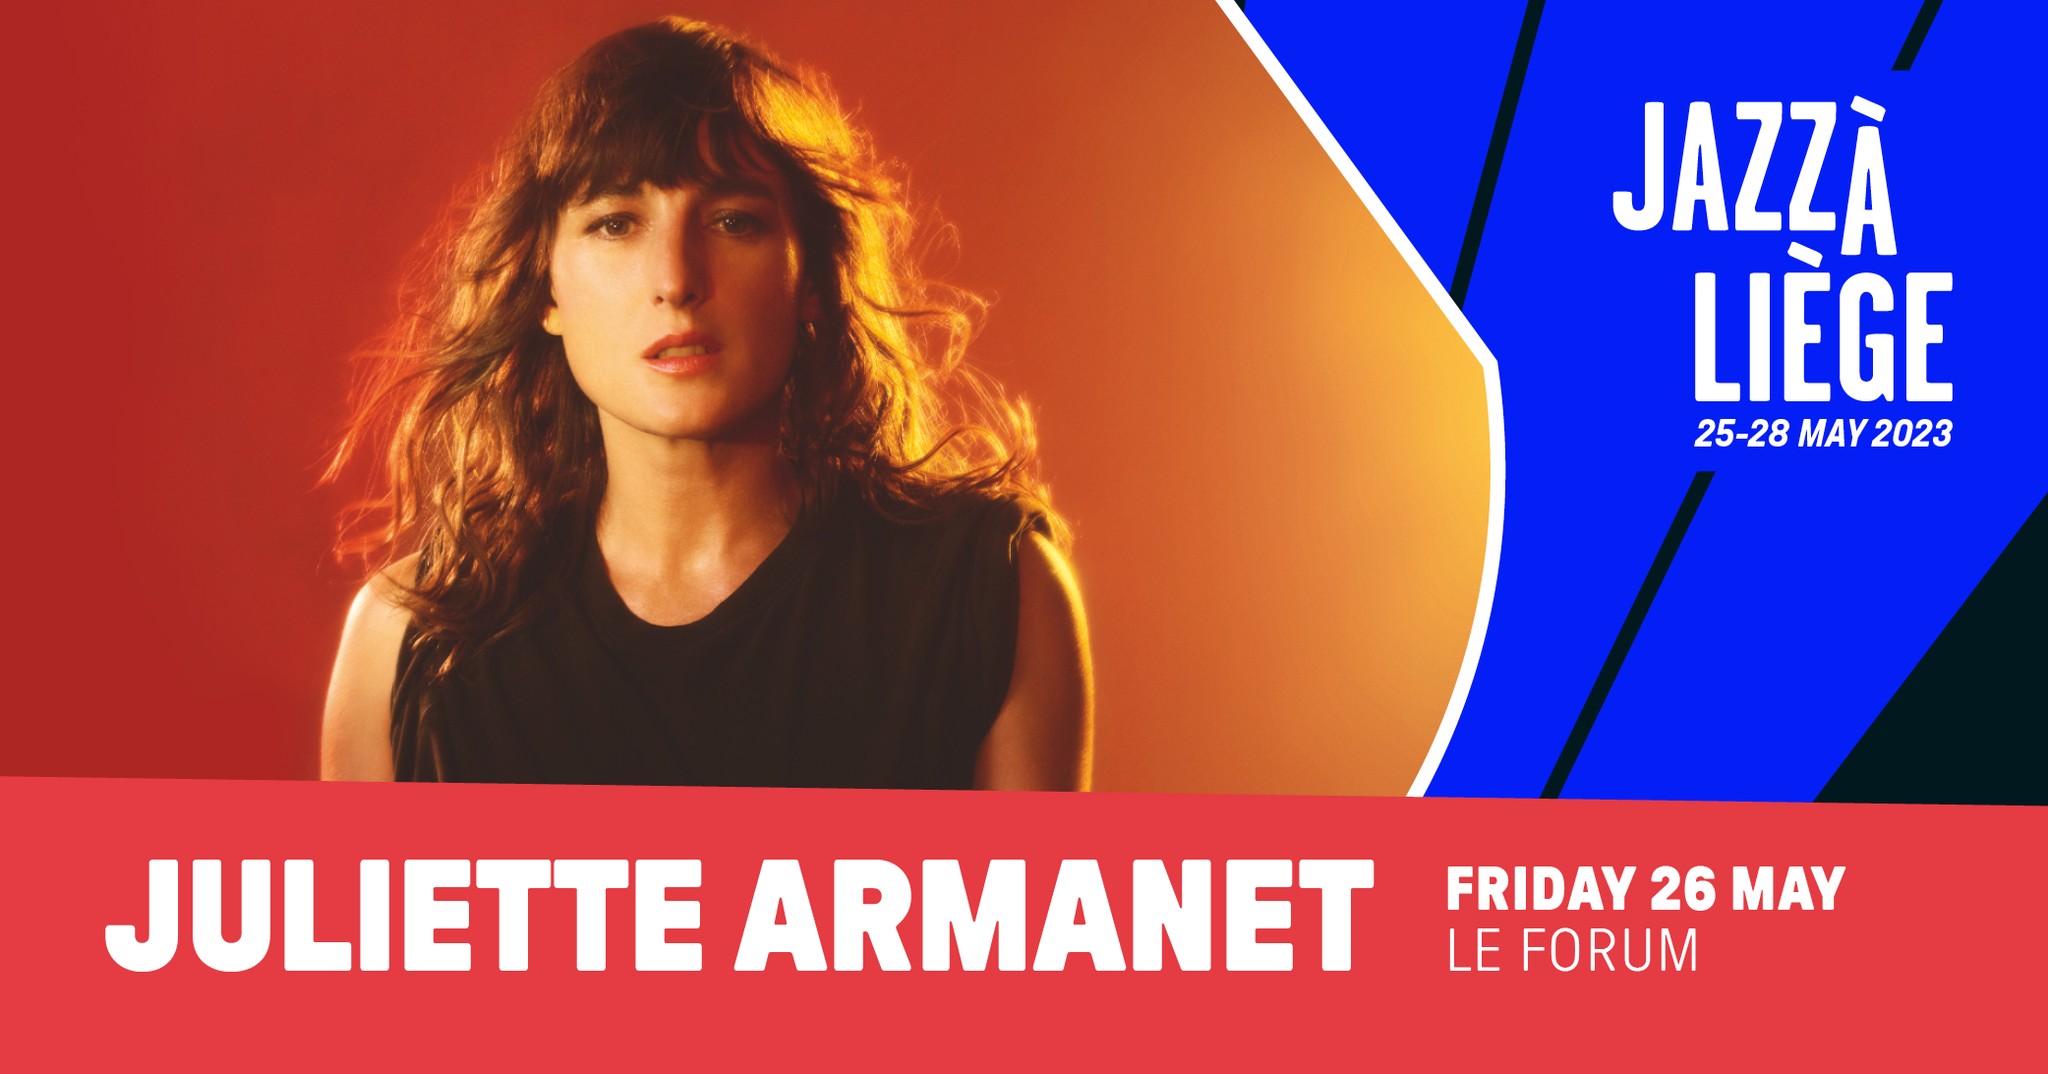 JULIETTE ARMANET le 26 mai au Jazz à Liège 2023 au Forum de LIEGE